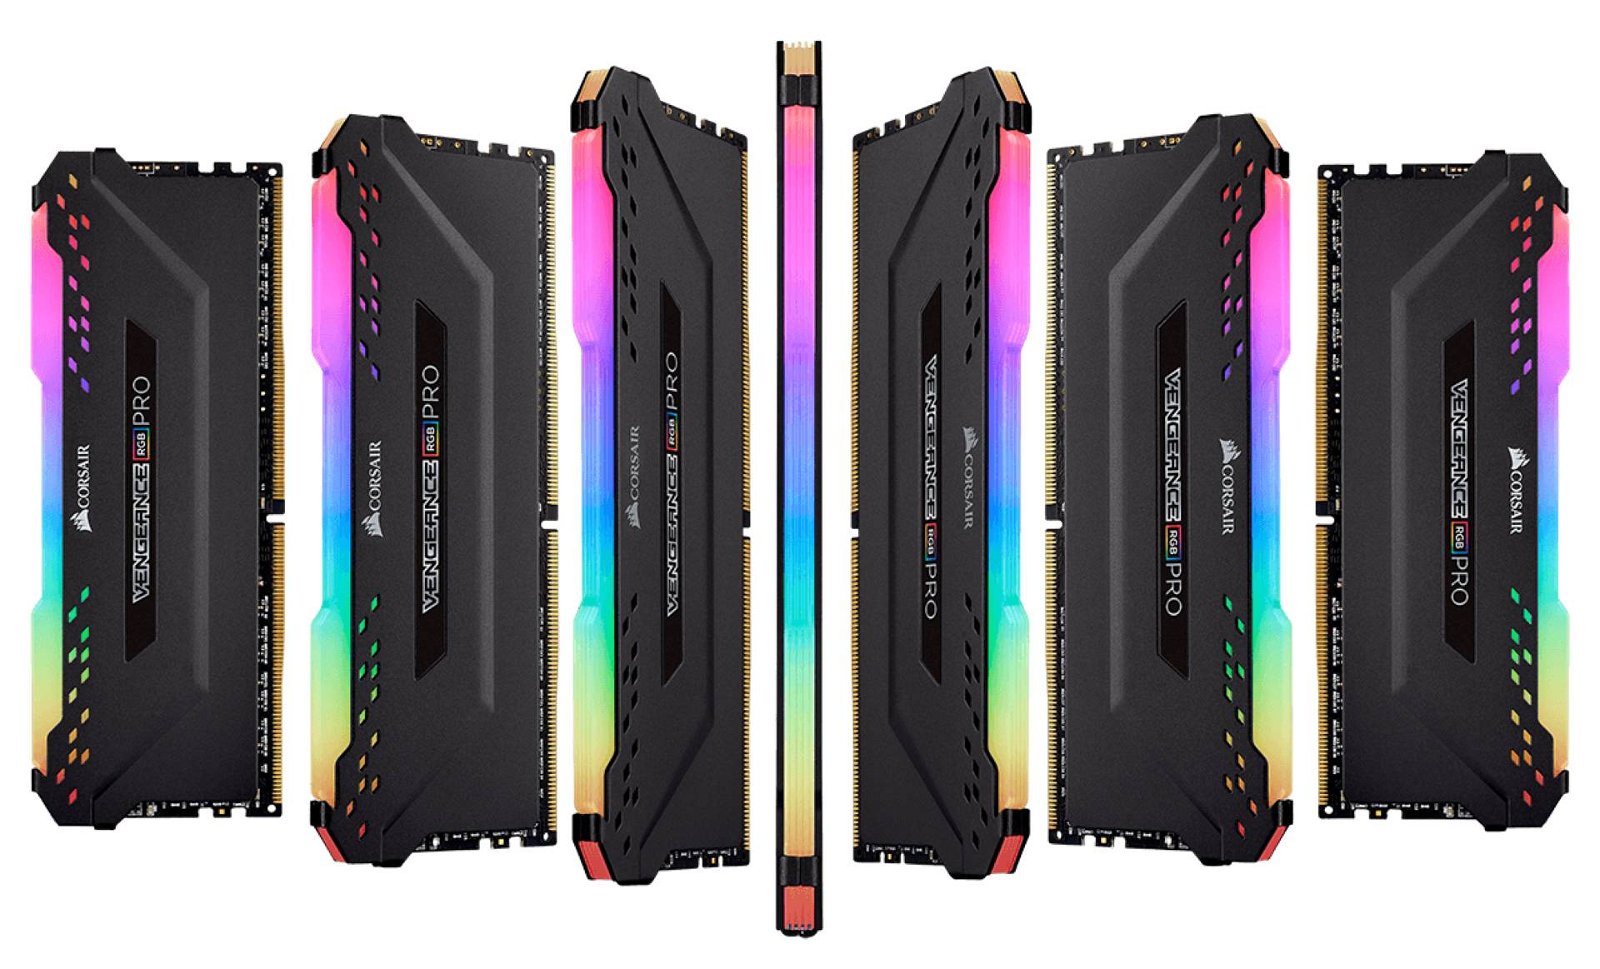 Immagine di Corsair, nuove RAM RGB "farlocche" per migliorare l'estetica del PC